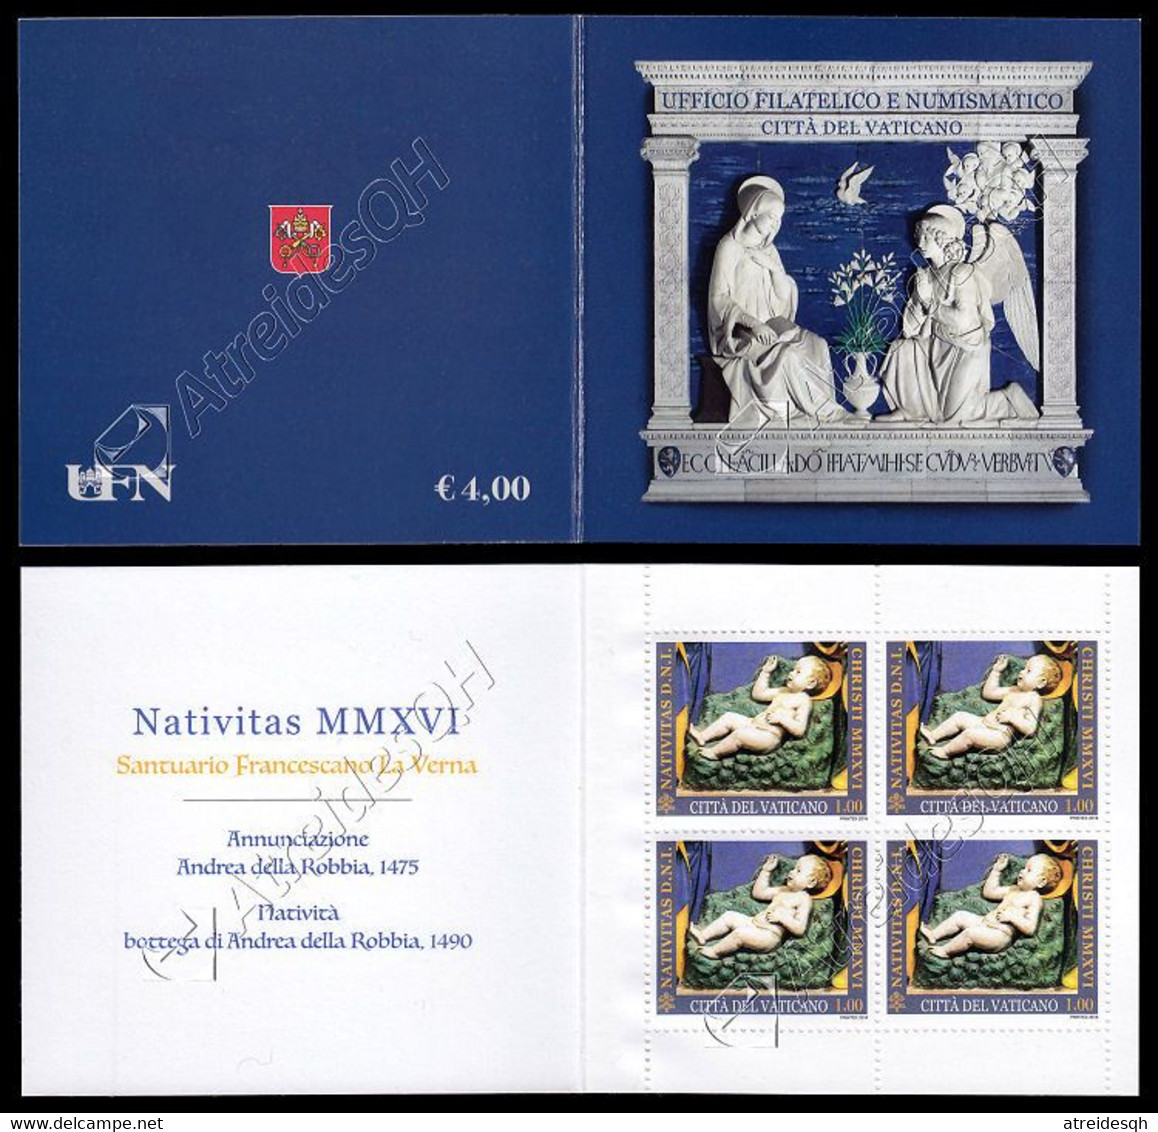 [Q] Vaticano / Vatican 2016: Libretto Natale / Christmas Booklet ** - Libretti